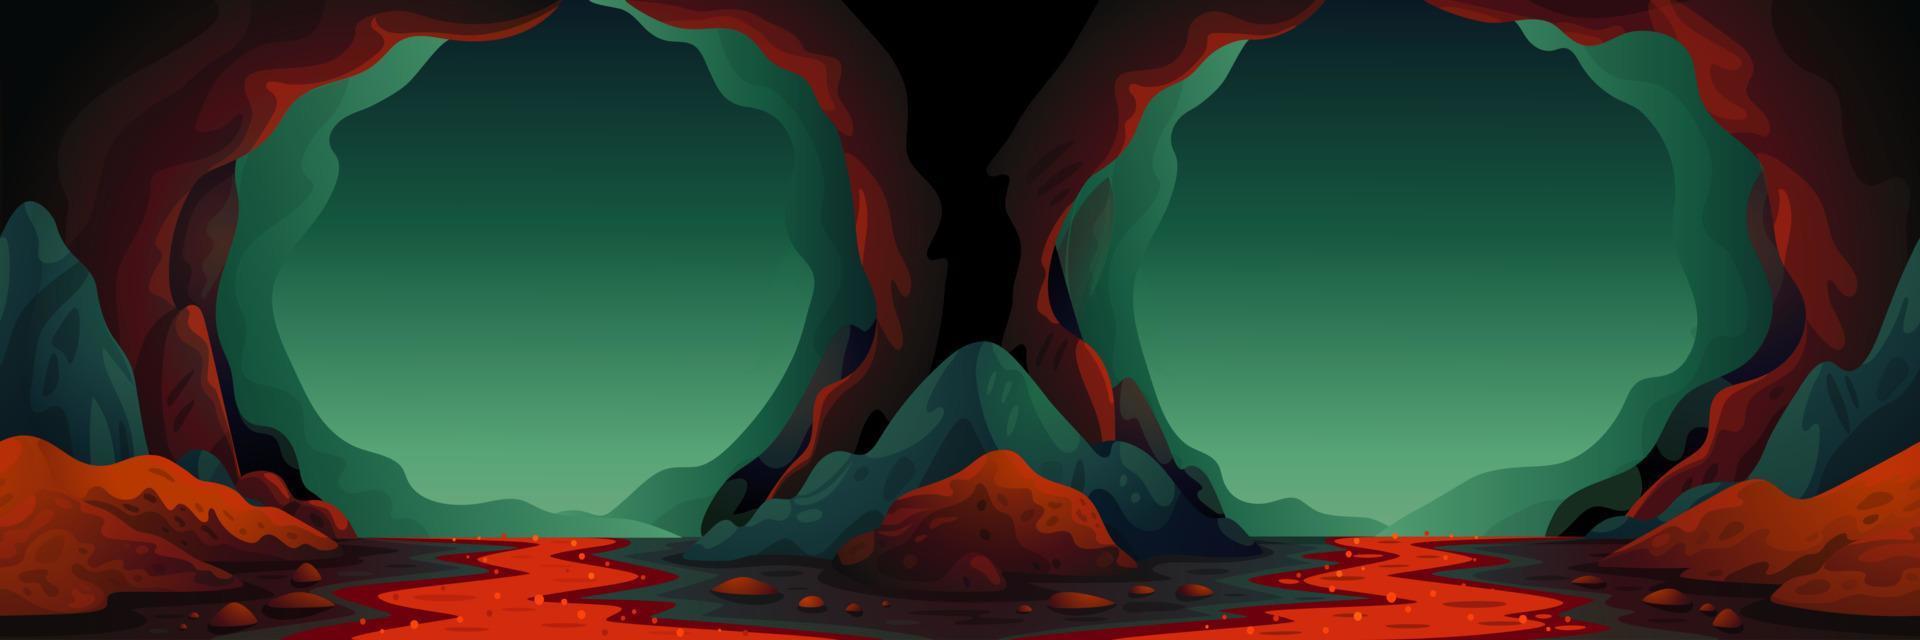 grotte - arrière-plan transparent vectoriel. paysage de caverne avec une rivière de lave souterraine aux couleurs bleu verdâtre. illustration vectorielle en style cartoon plat. vecteur